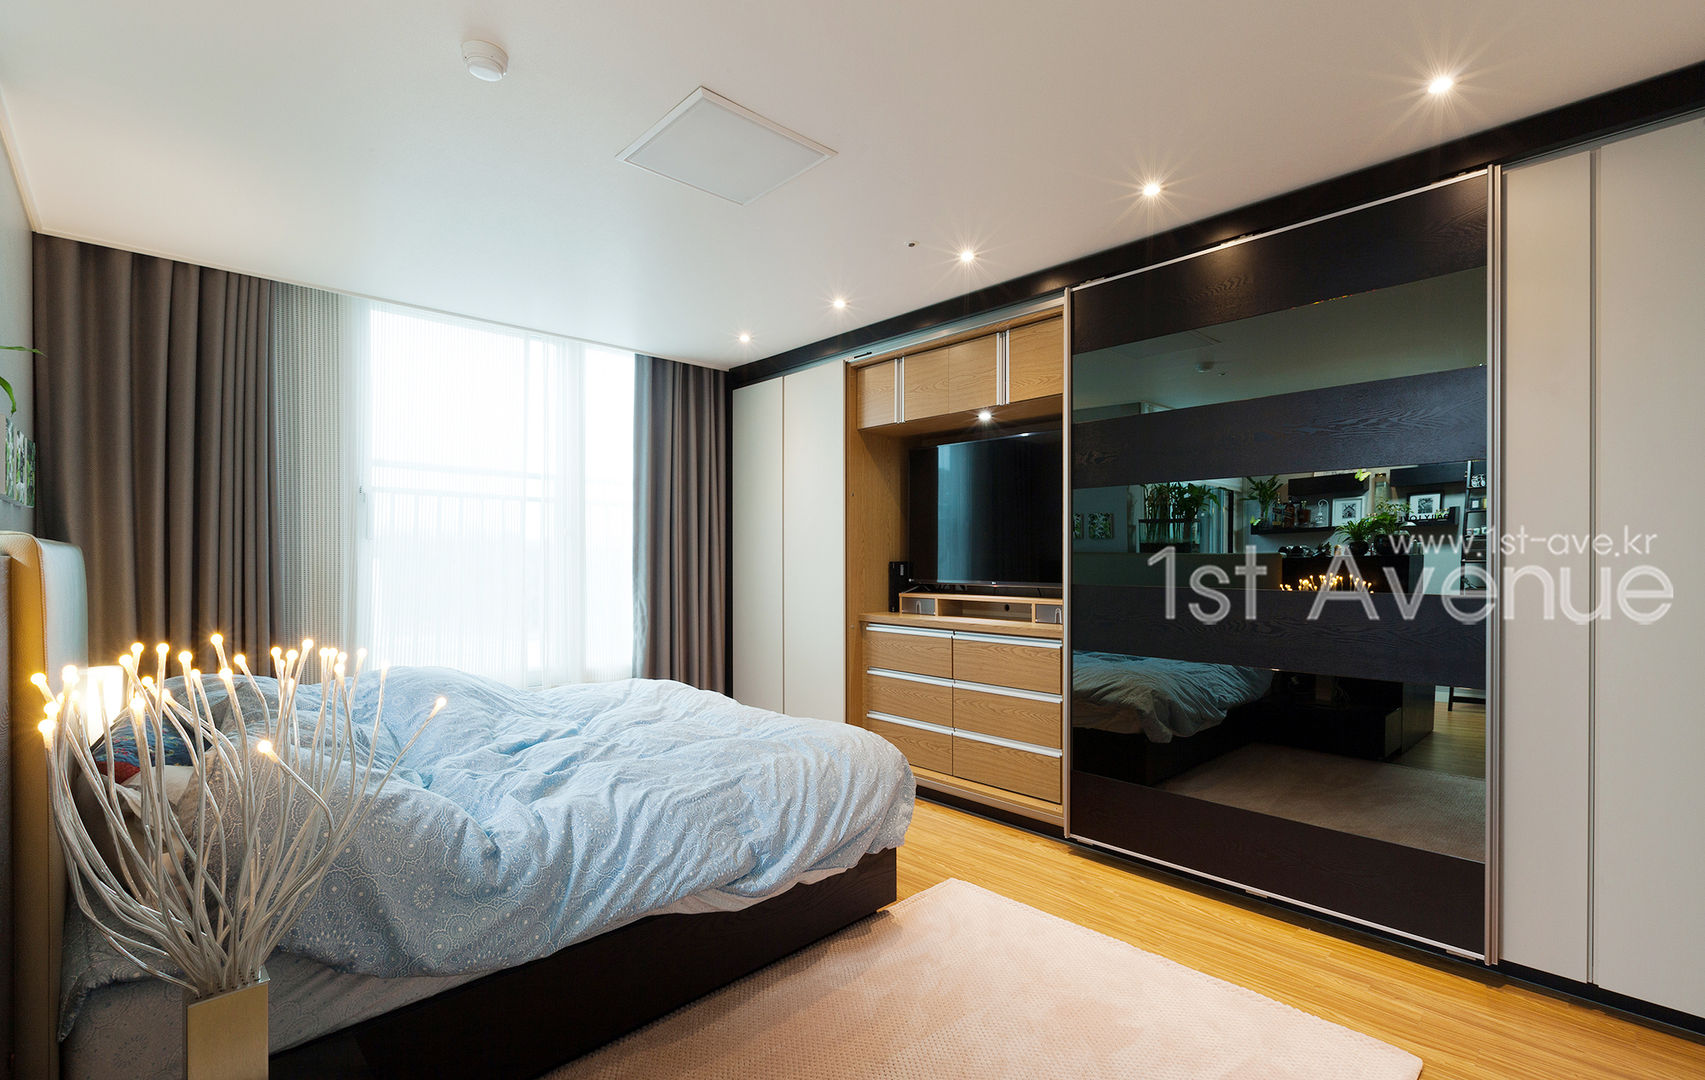 감각적인 패턴과 이국적인 감성으로 꾸며진 하남 탑층 아파트 인테리어 , 퍼스트애비뉴 퍼스트애비뉴 Modern style bedroom